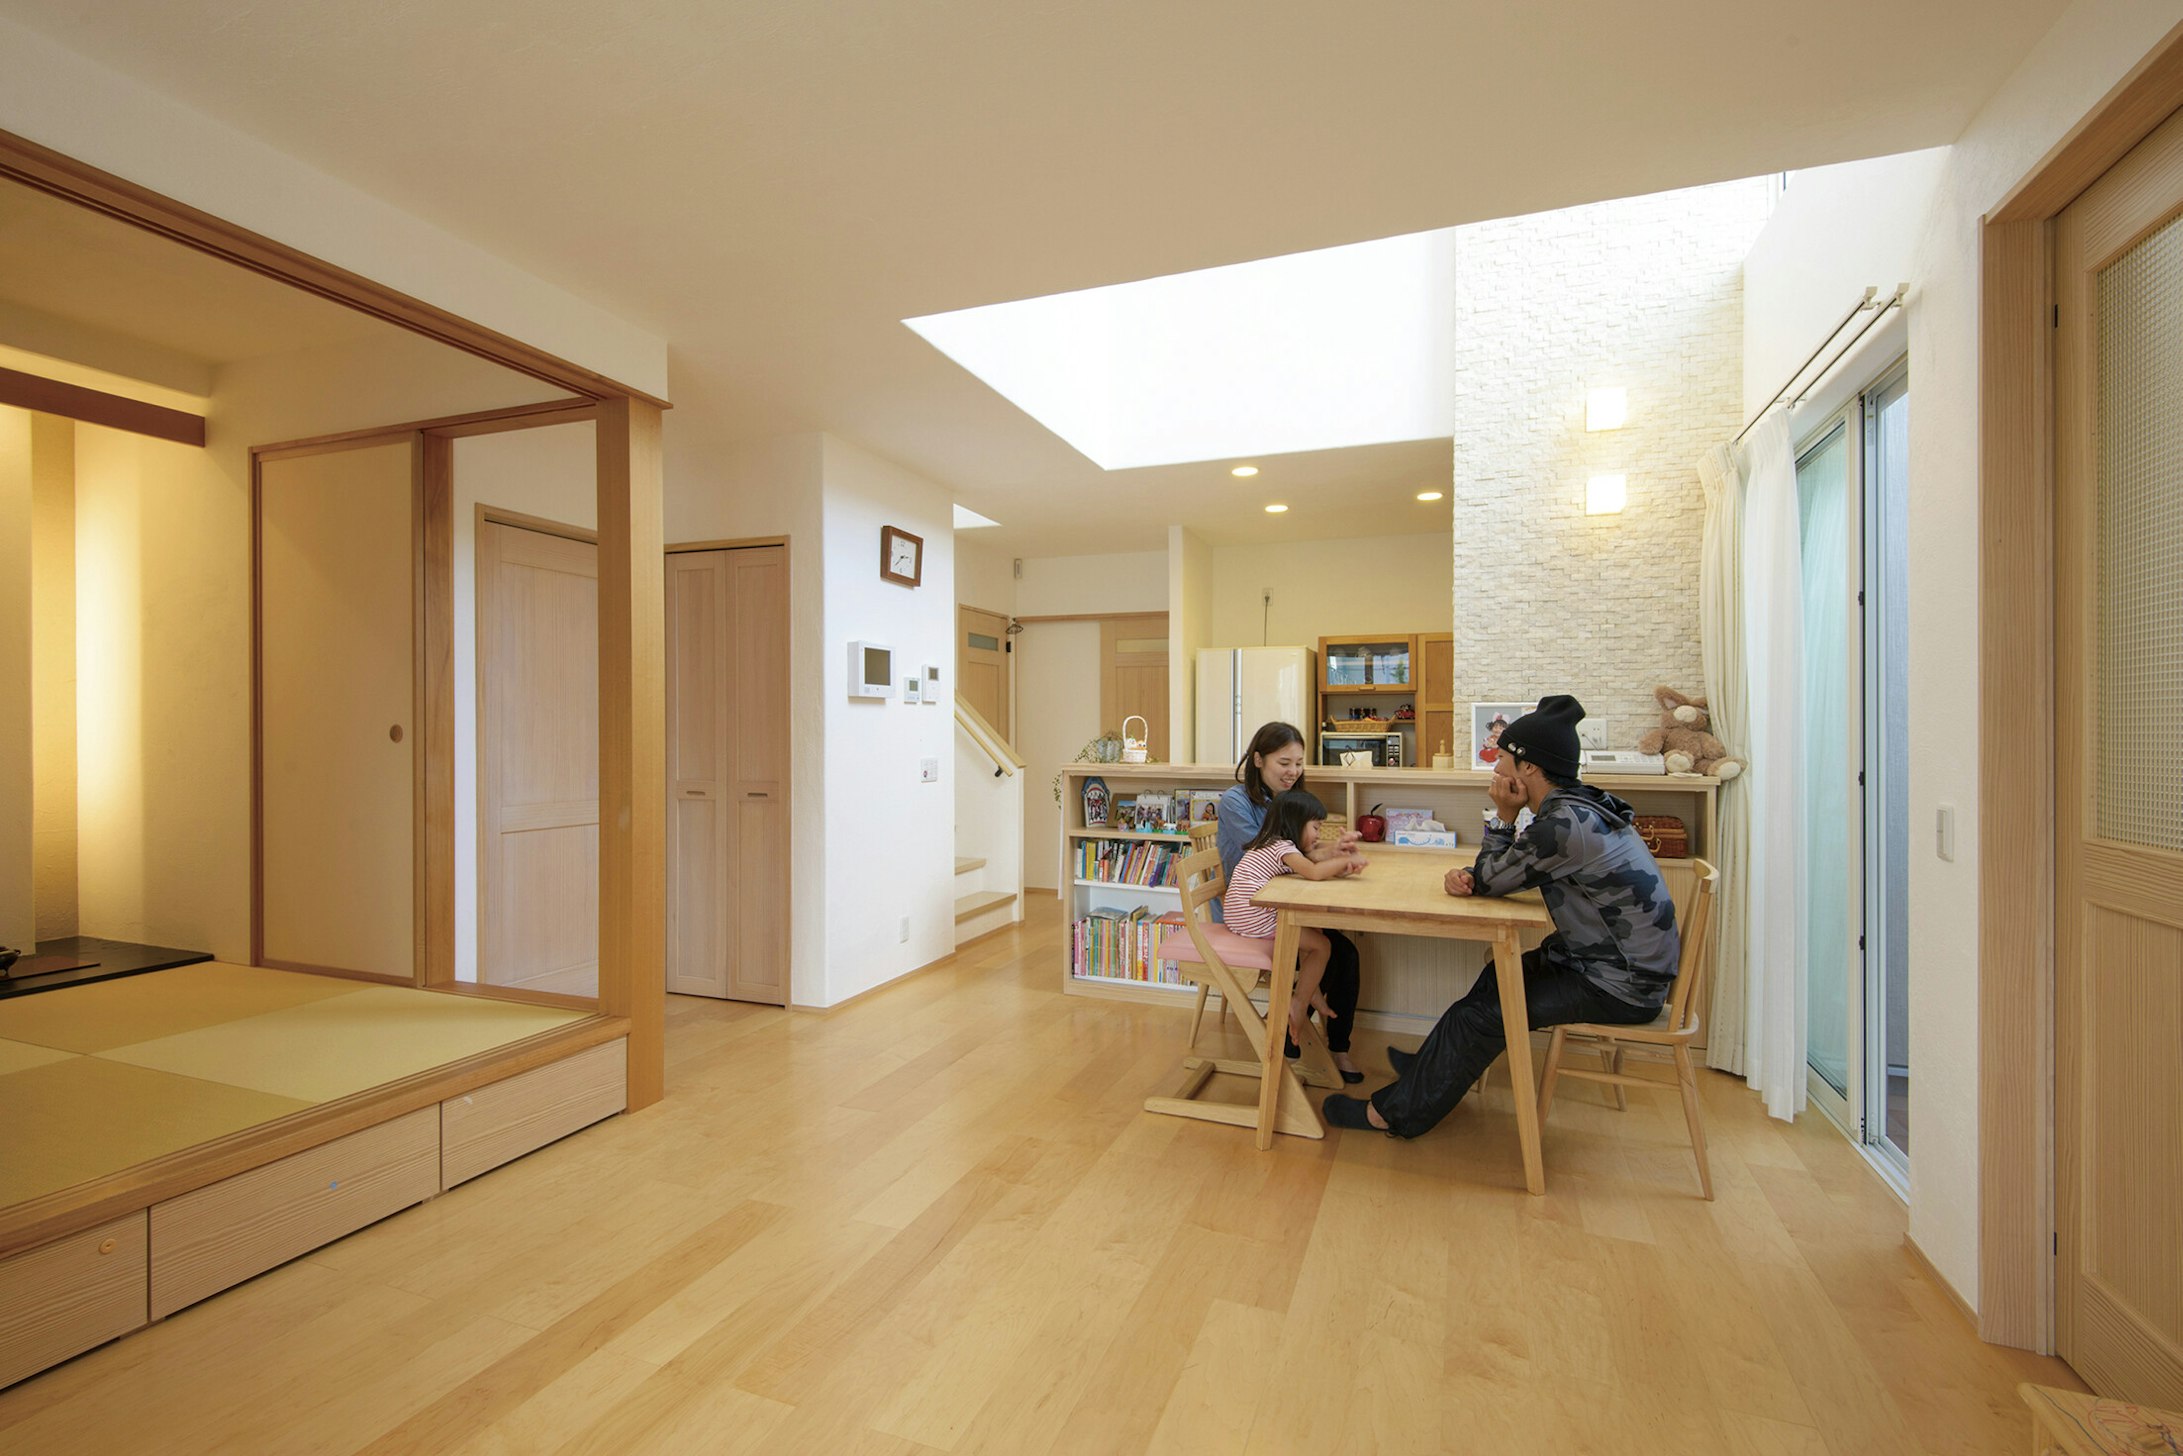 【石川】飛鳥住宅株式会社_漆喰壁で子どもも安心 プライバシーと明るさを両立させた家